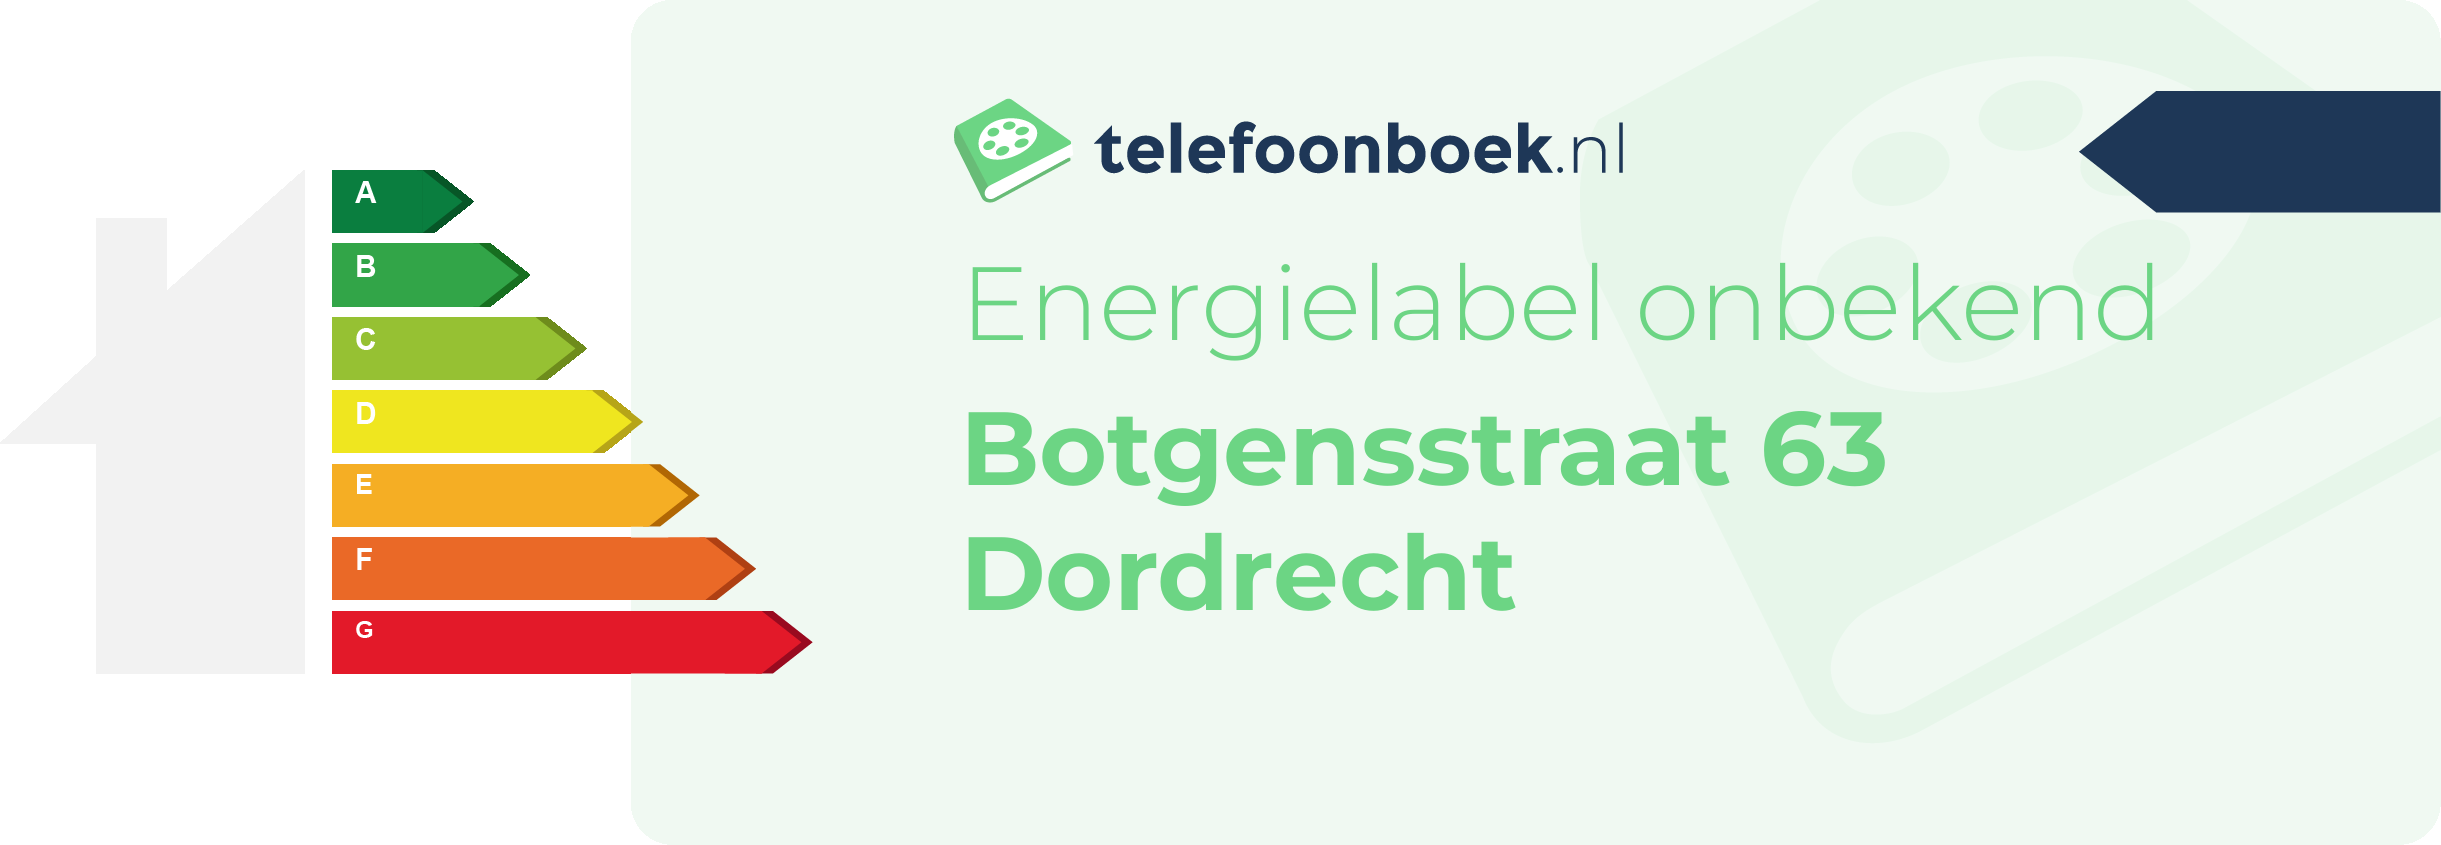 Energielabel Botgensstraat 63 Dordrecht